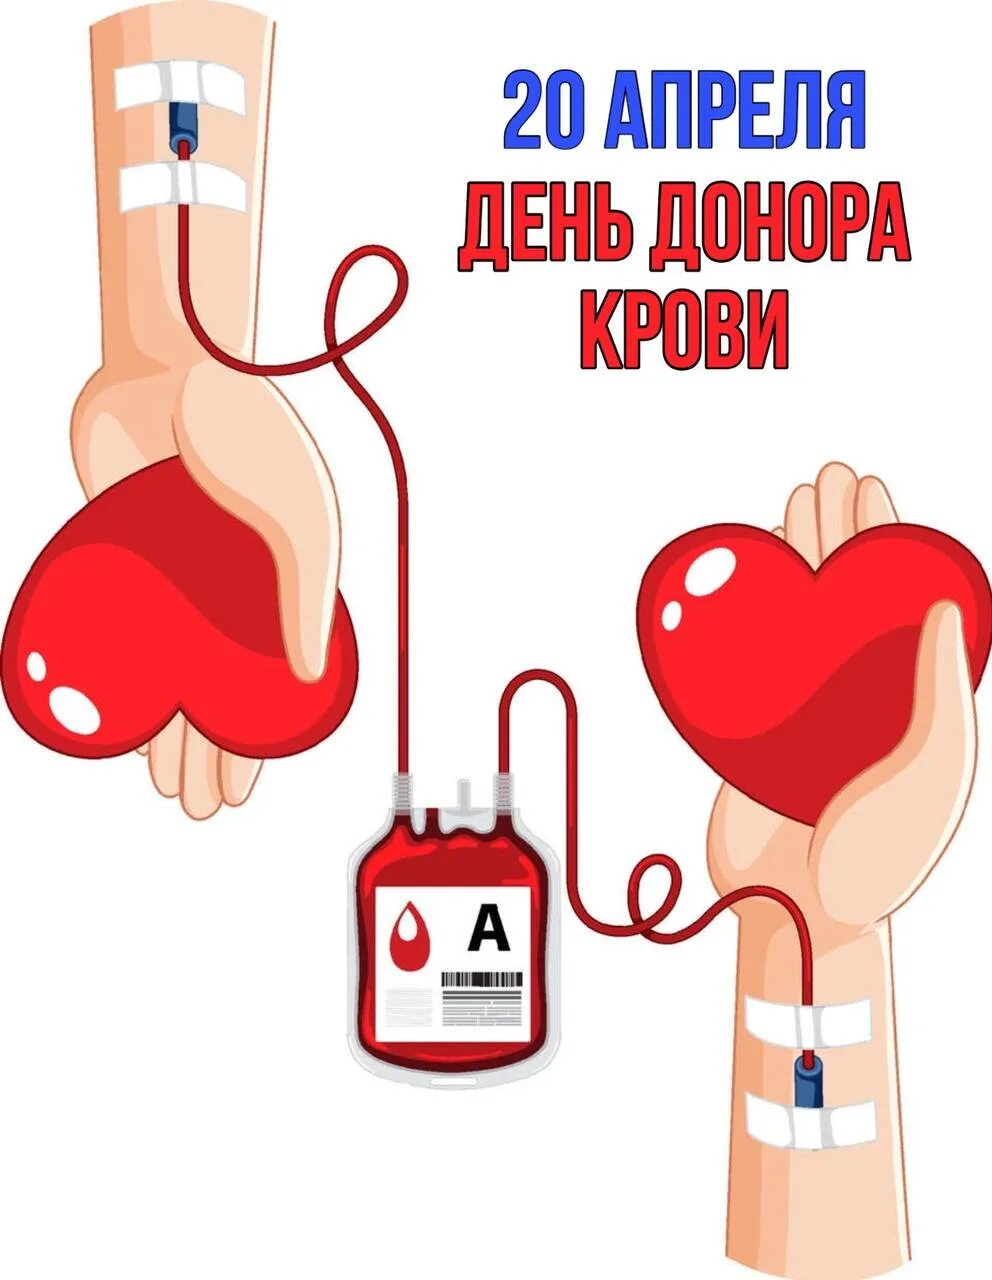 Национальный день донора крови в россии. День донора. 20 Апреля день донора. День донора плакат. Донорство крови плакат.